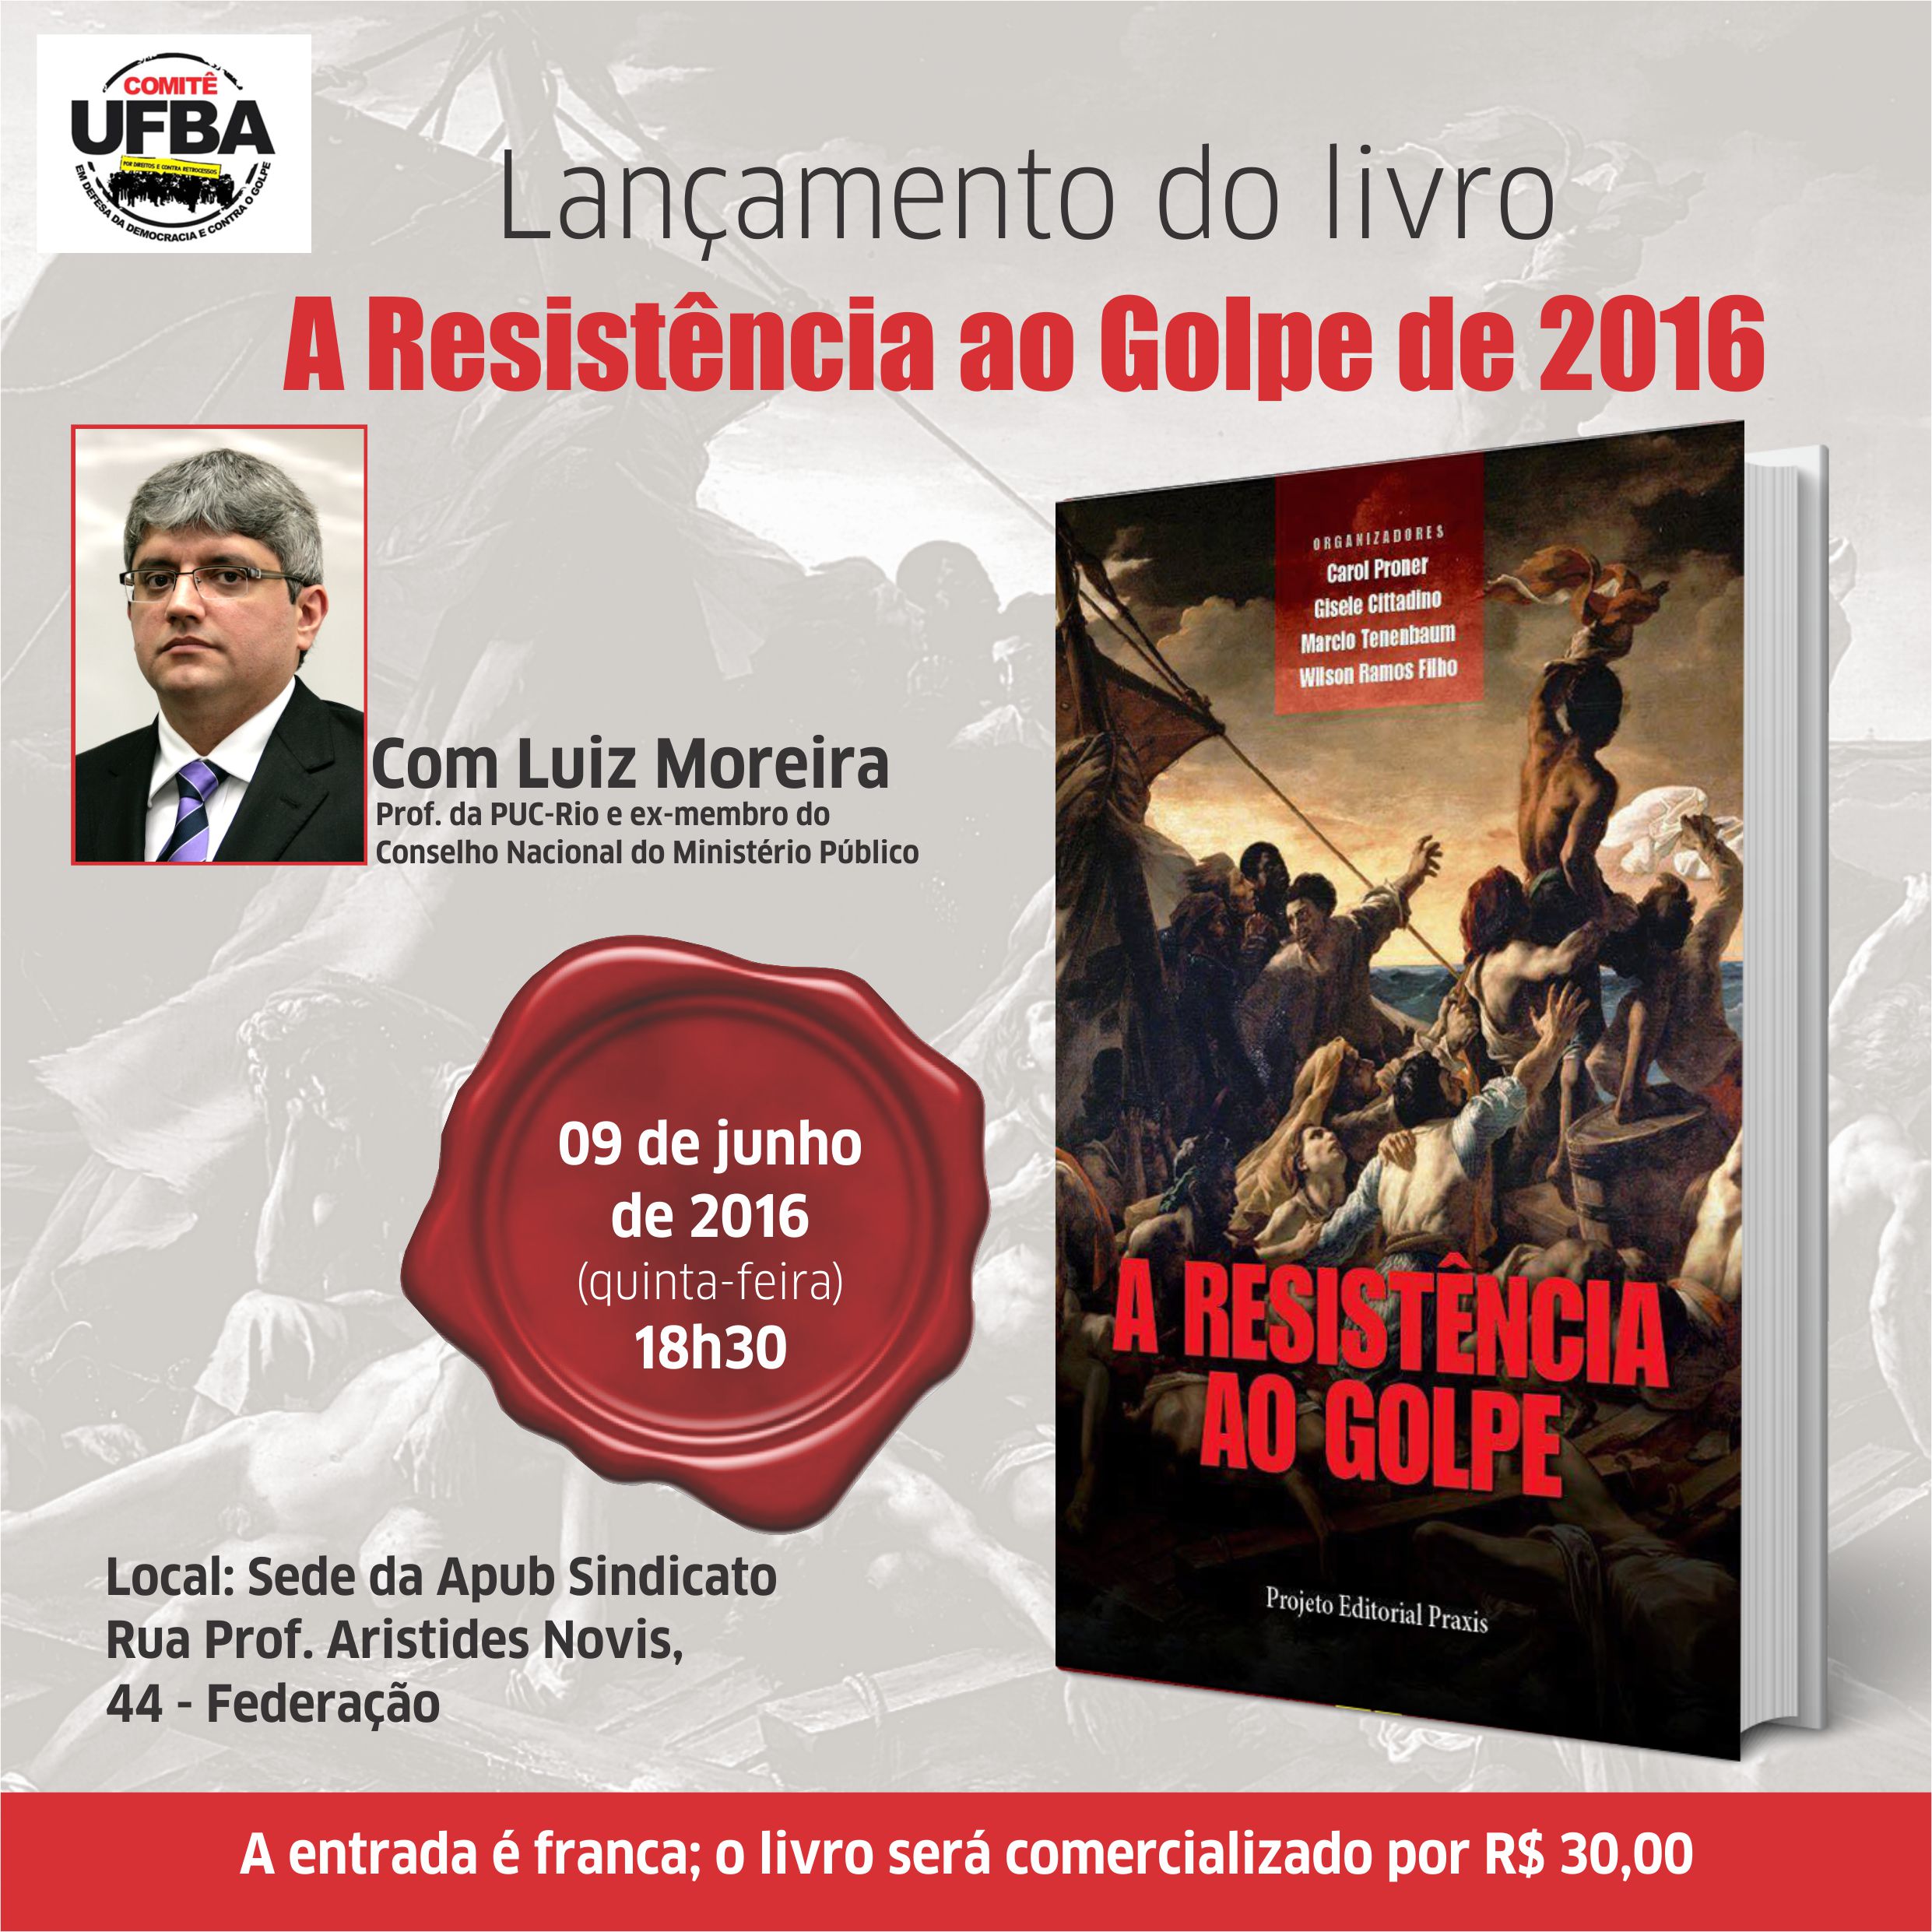 Comitê UFBA promove lançamento do livro 